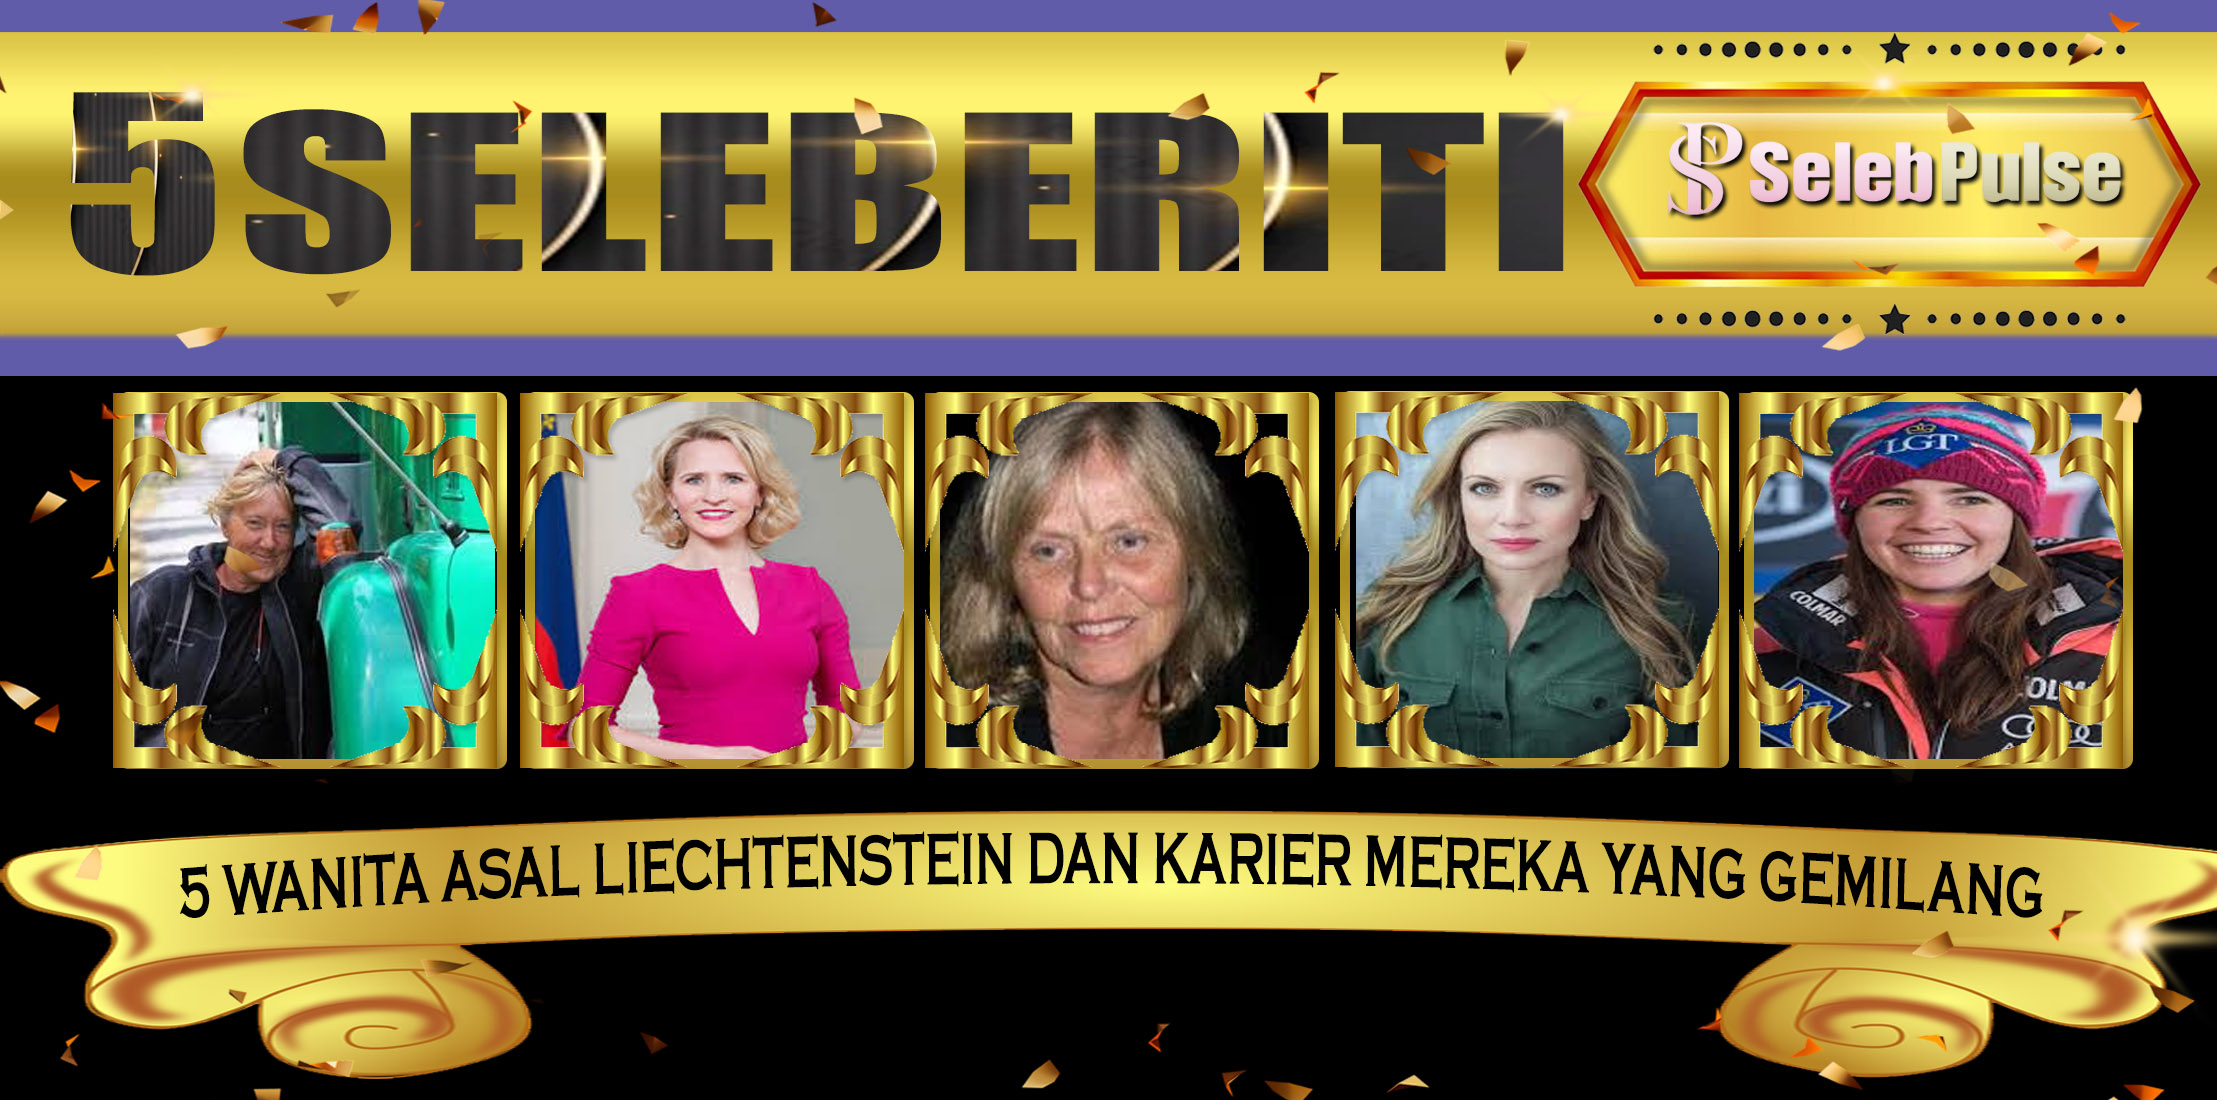 5 Wanita Asal Liechtenstein